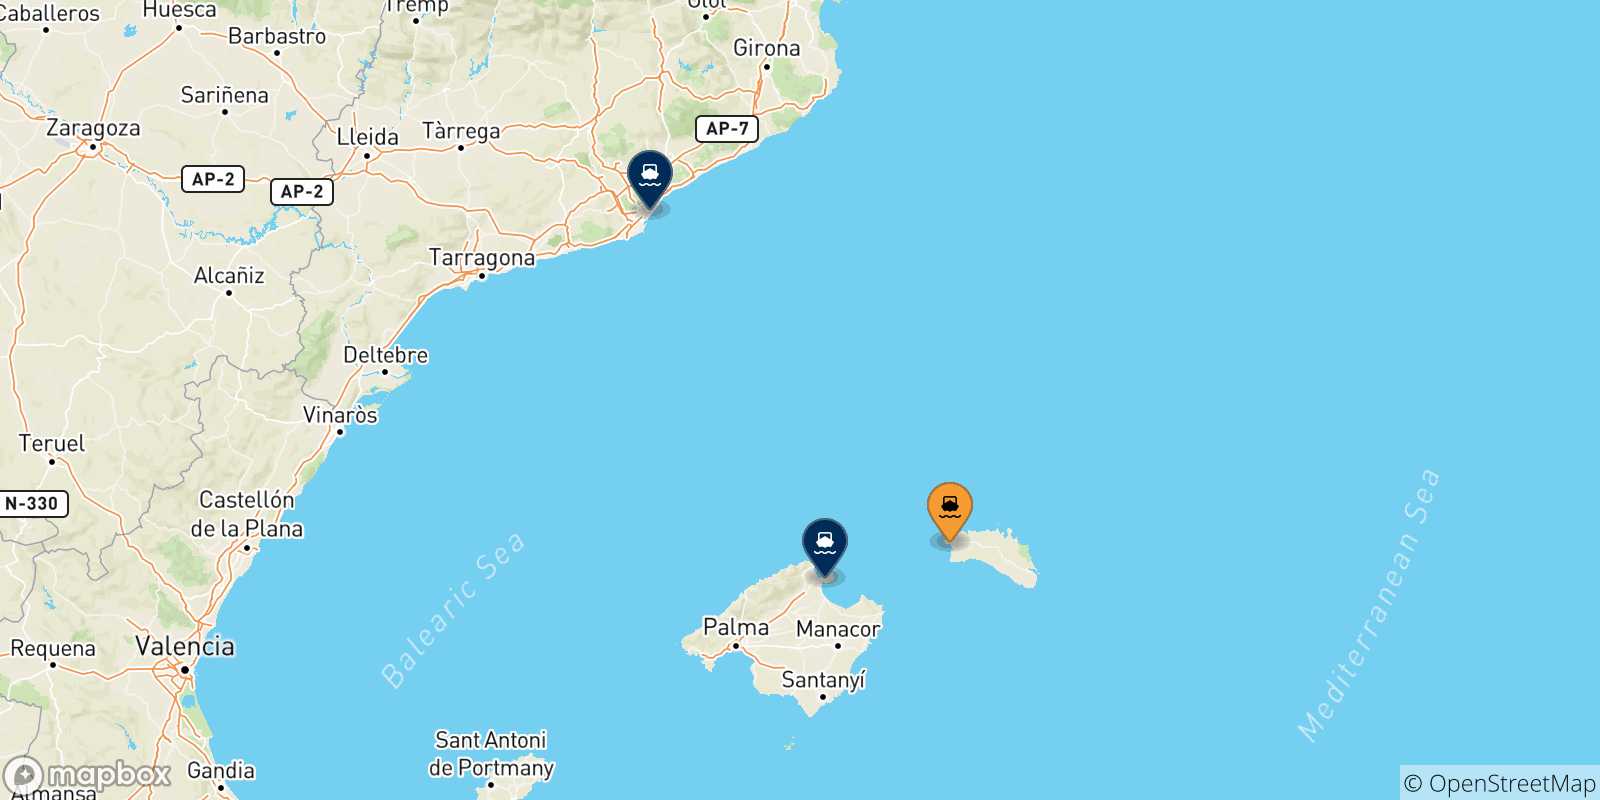 Mappa delle possibili rotte tra Ciutadella (Minorca) e la Spagna